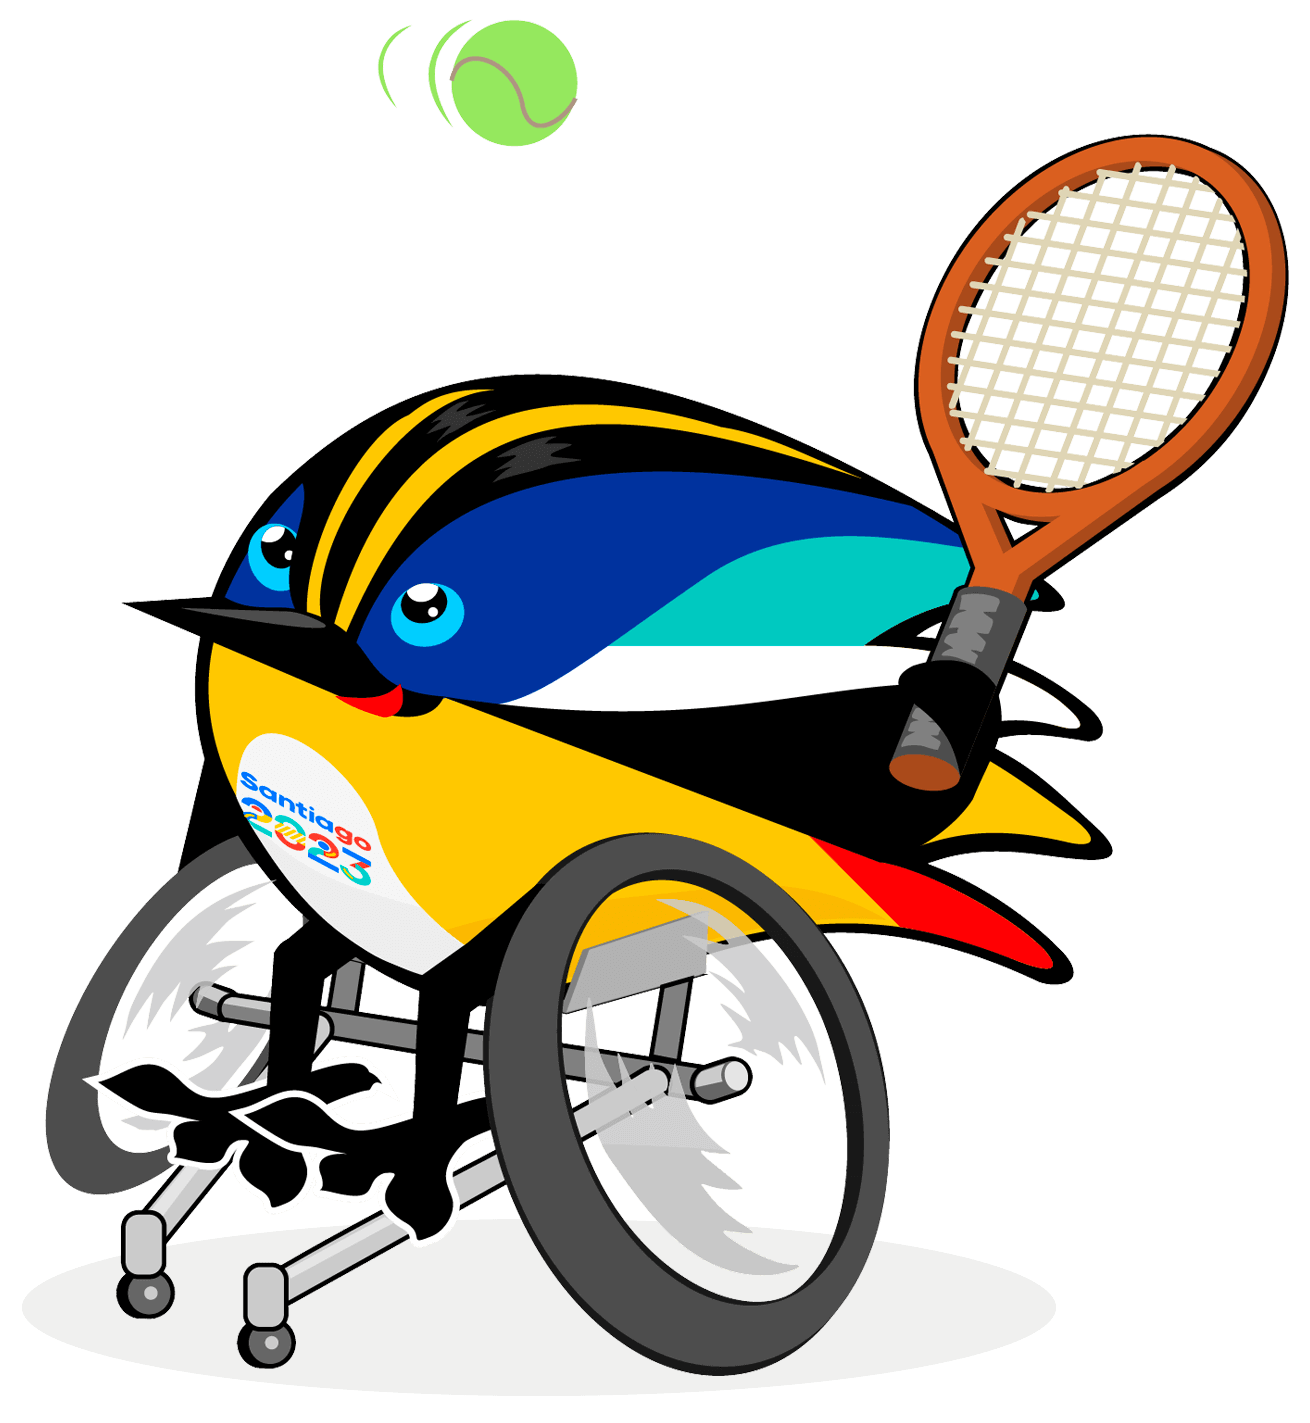 Fiu practica tenis en silla de ruedas, con una de sus alas toma una raqueta y con la otra mueve su silla. Sus ojos se dirigen a una pelota de tenis y se muestra muy concentrado para practicar este deporte. 